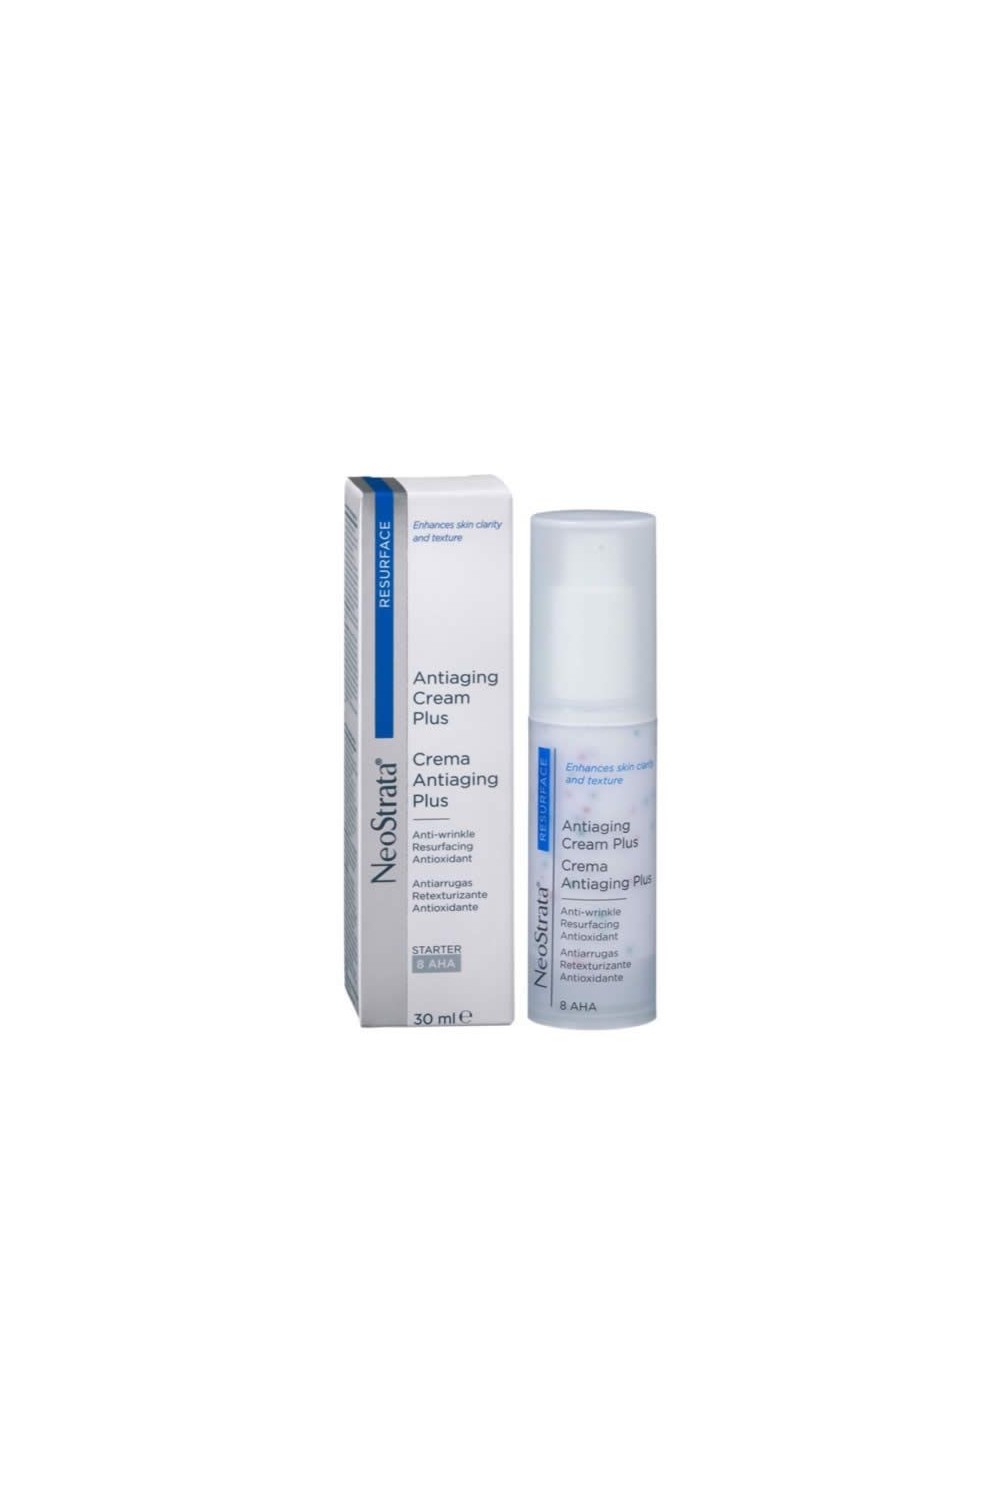 Neostrata Resurface Antiaging Cream Plus 8 Aha 30ml